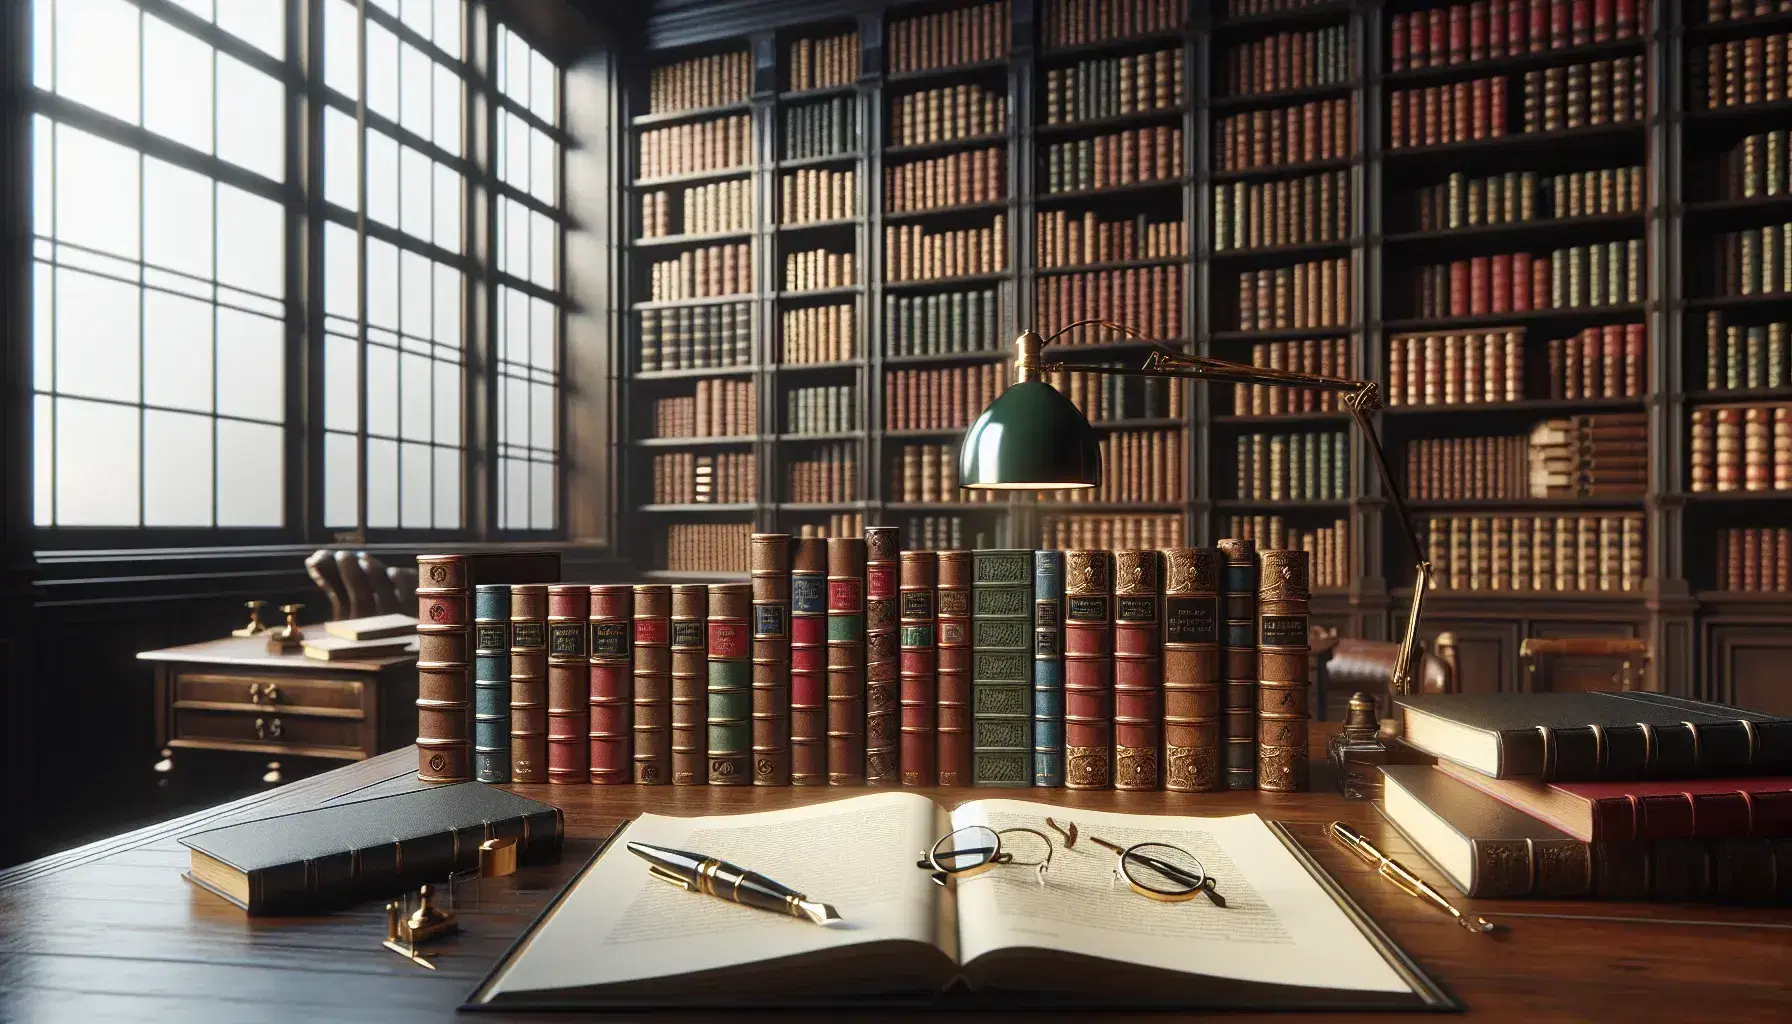 Biblioteca con scaffali in legno scuro pieni di libri rilegati, scrivania con libri aperti, occhiali e penna stilografica, lampada accesa.